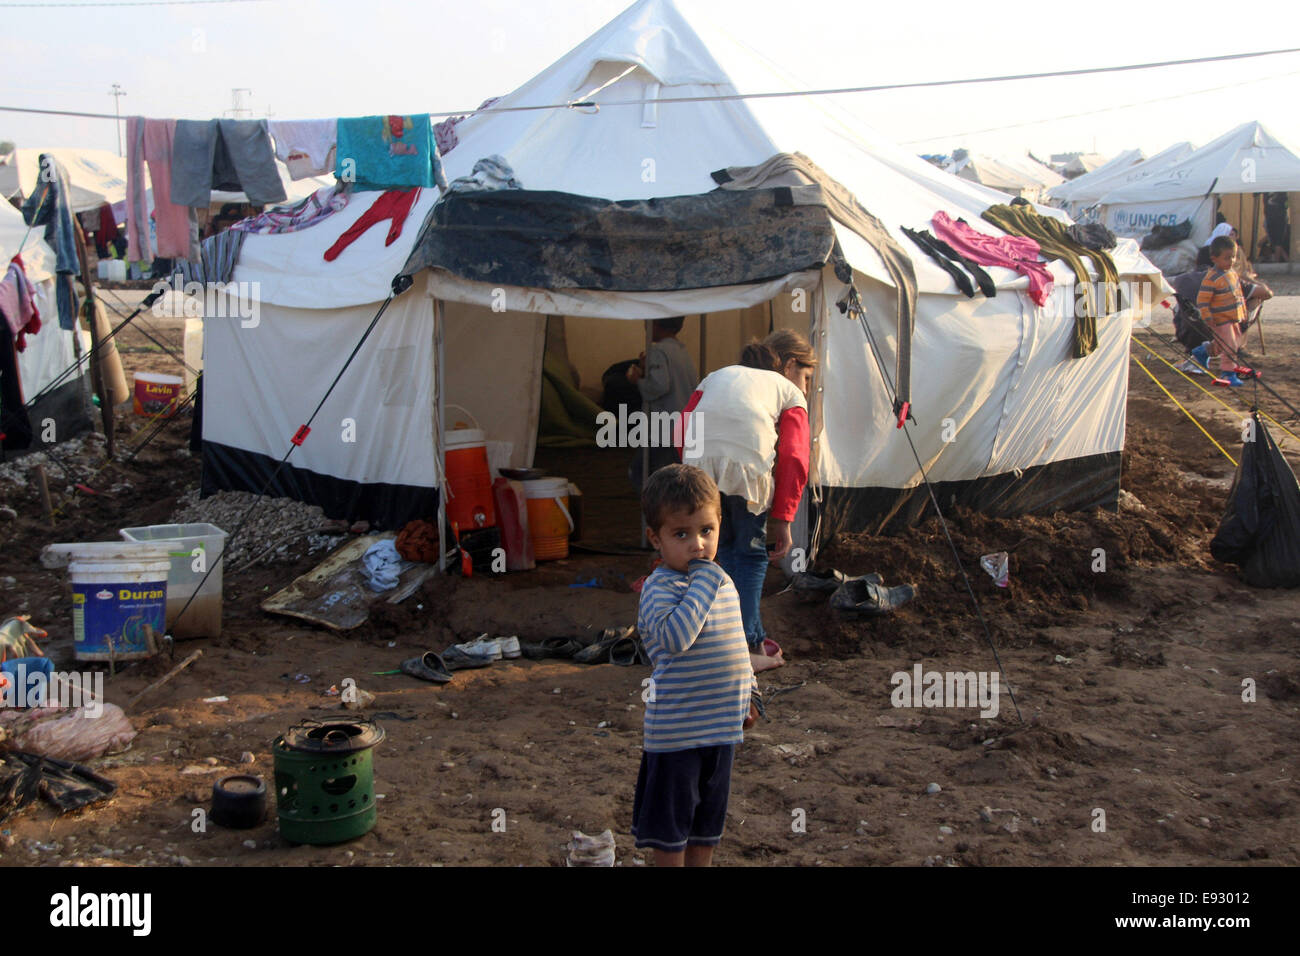 Dahouk, Iraq. 17 Oct, 2014. Un garçon est vu dans le Khanki camp, environ 20 km au nord-ouest de la province de Dohouk, dans le nord de l'Irak, le 17 octobre 2014. © Yaser Jawad/Xinhua/Alamy Live News Banque D'Images